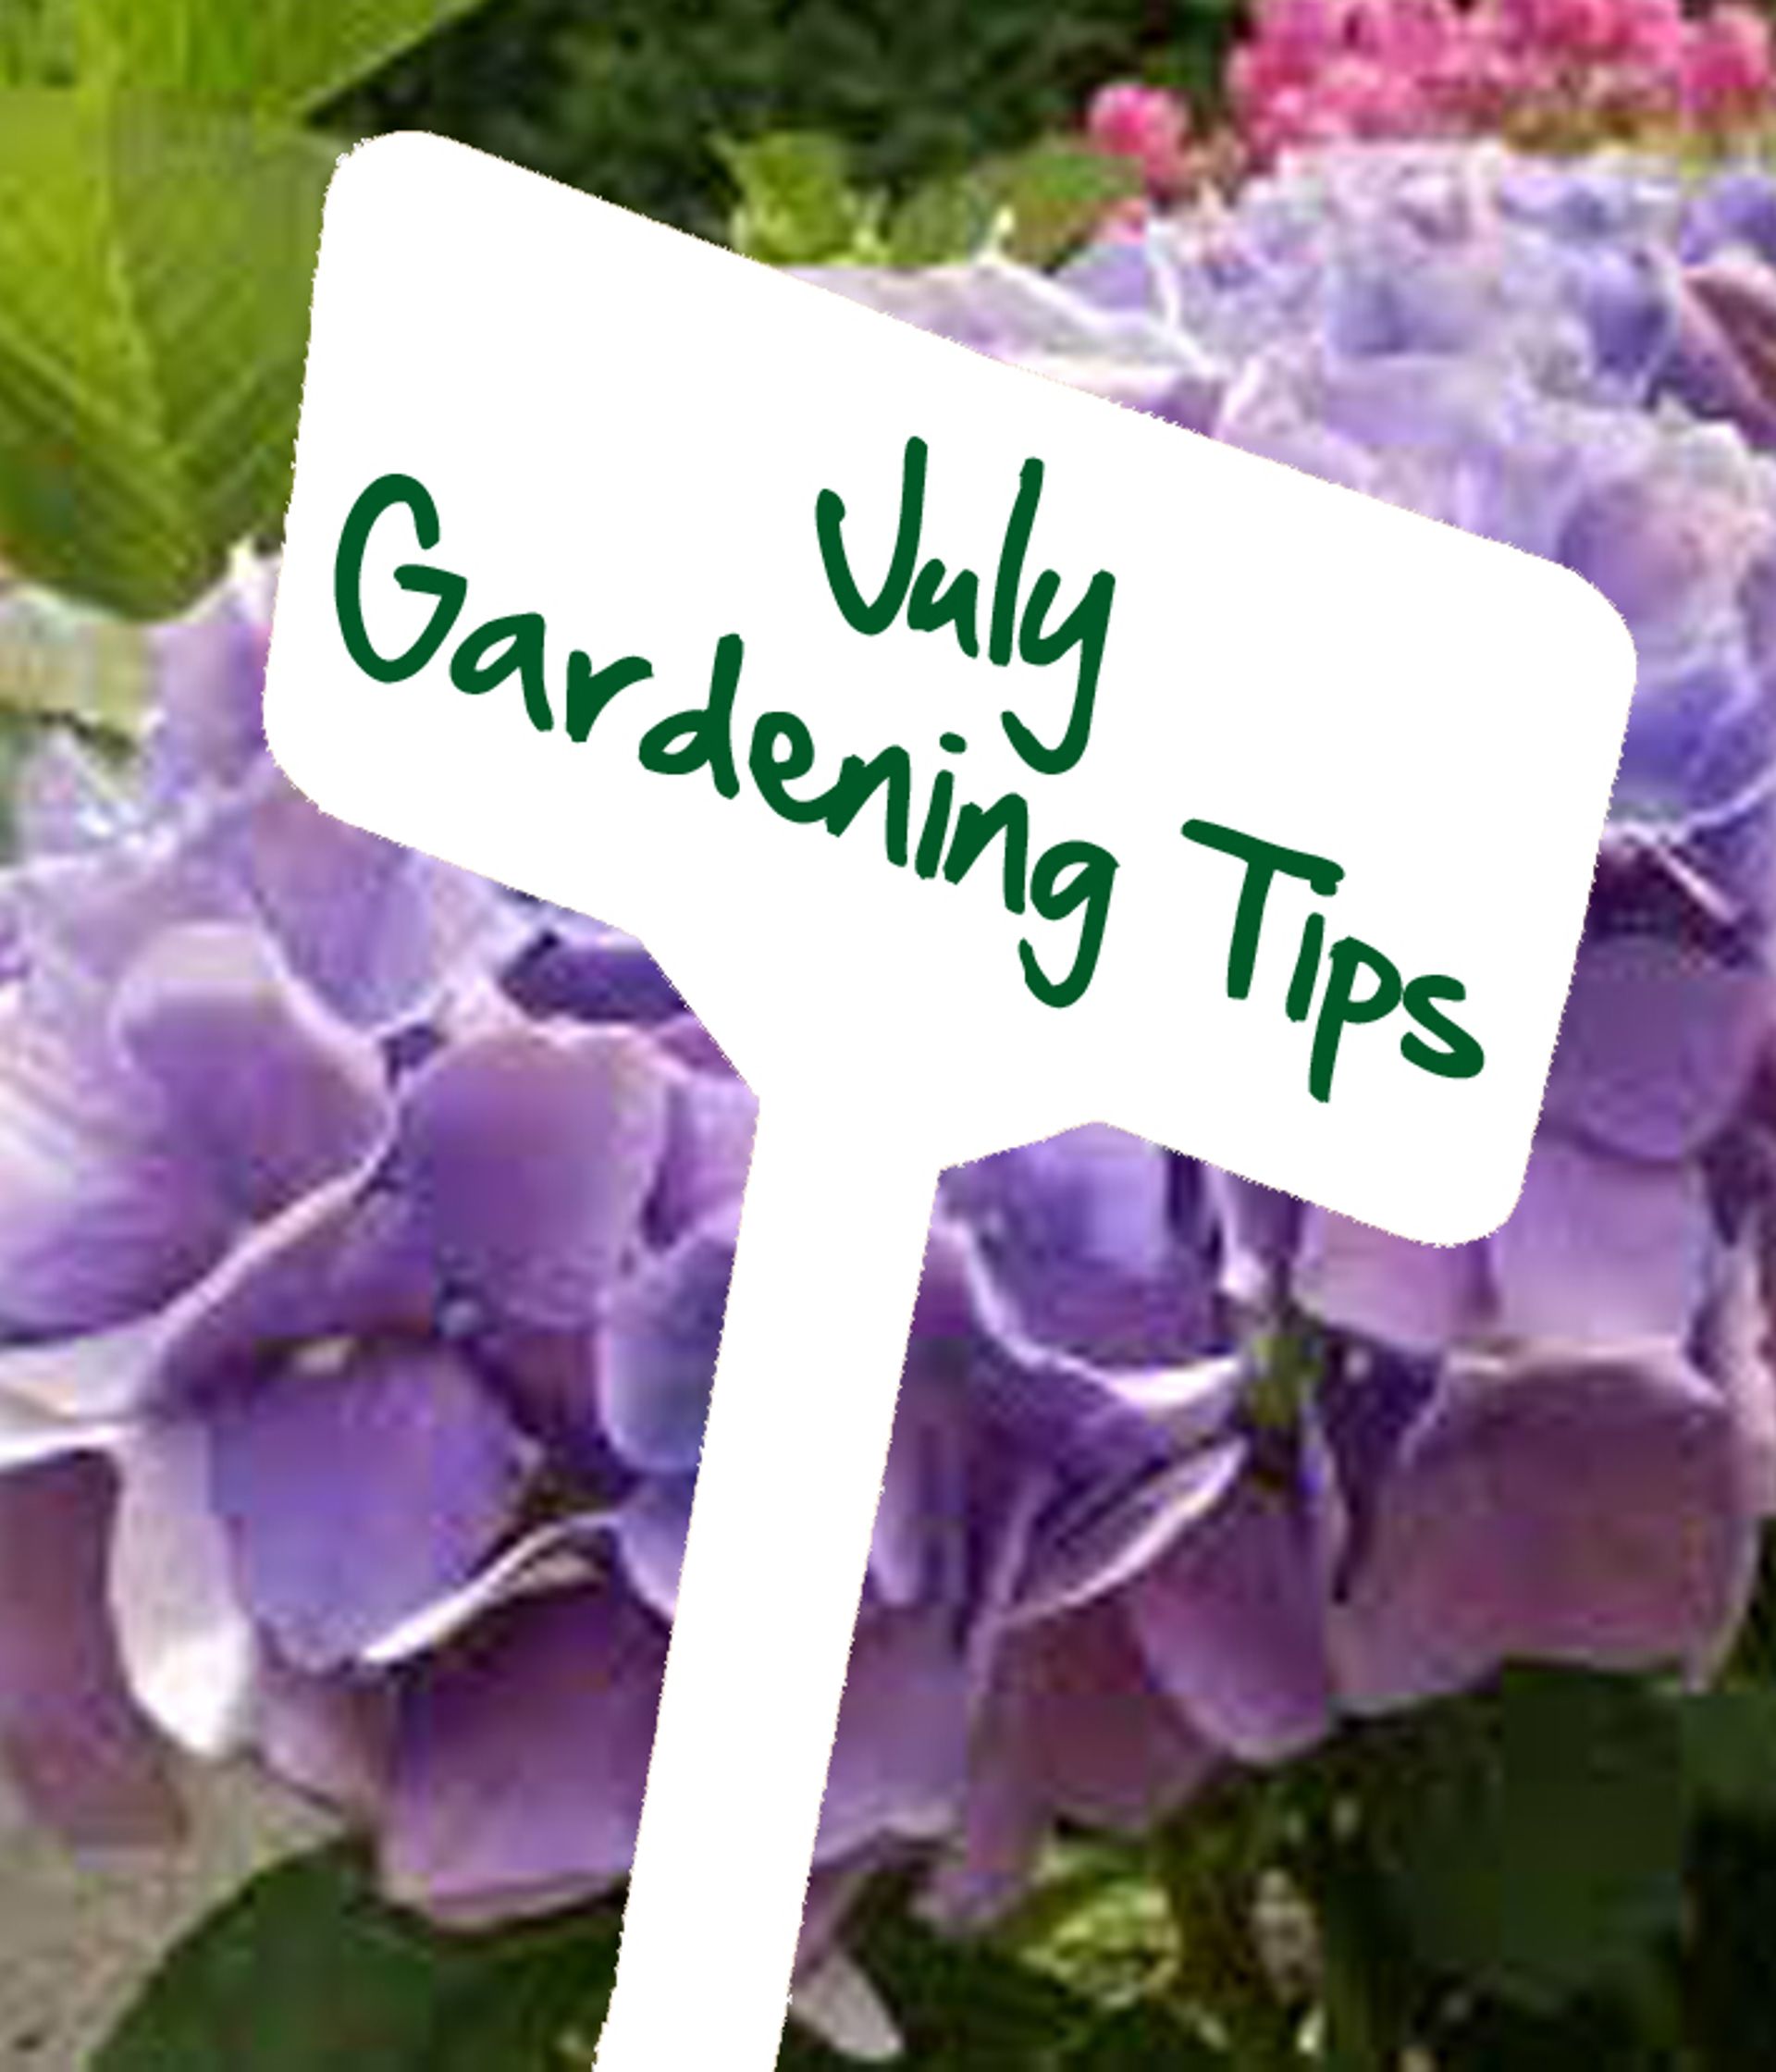 July gardening tips by Reg Moule